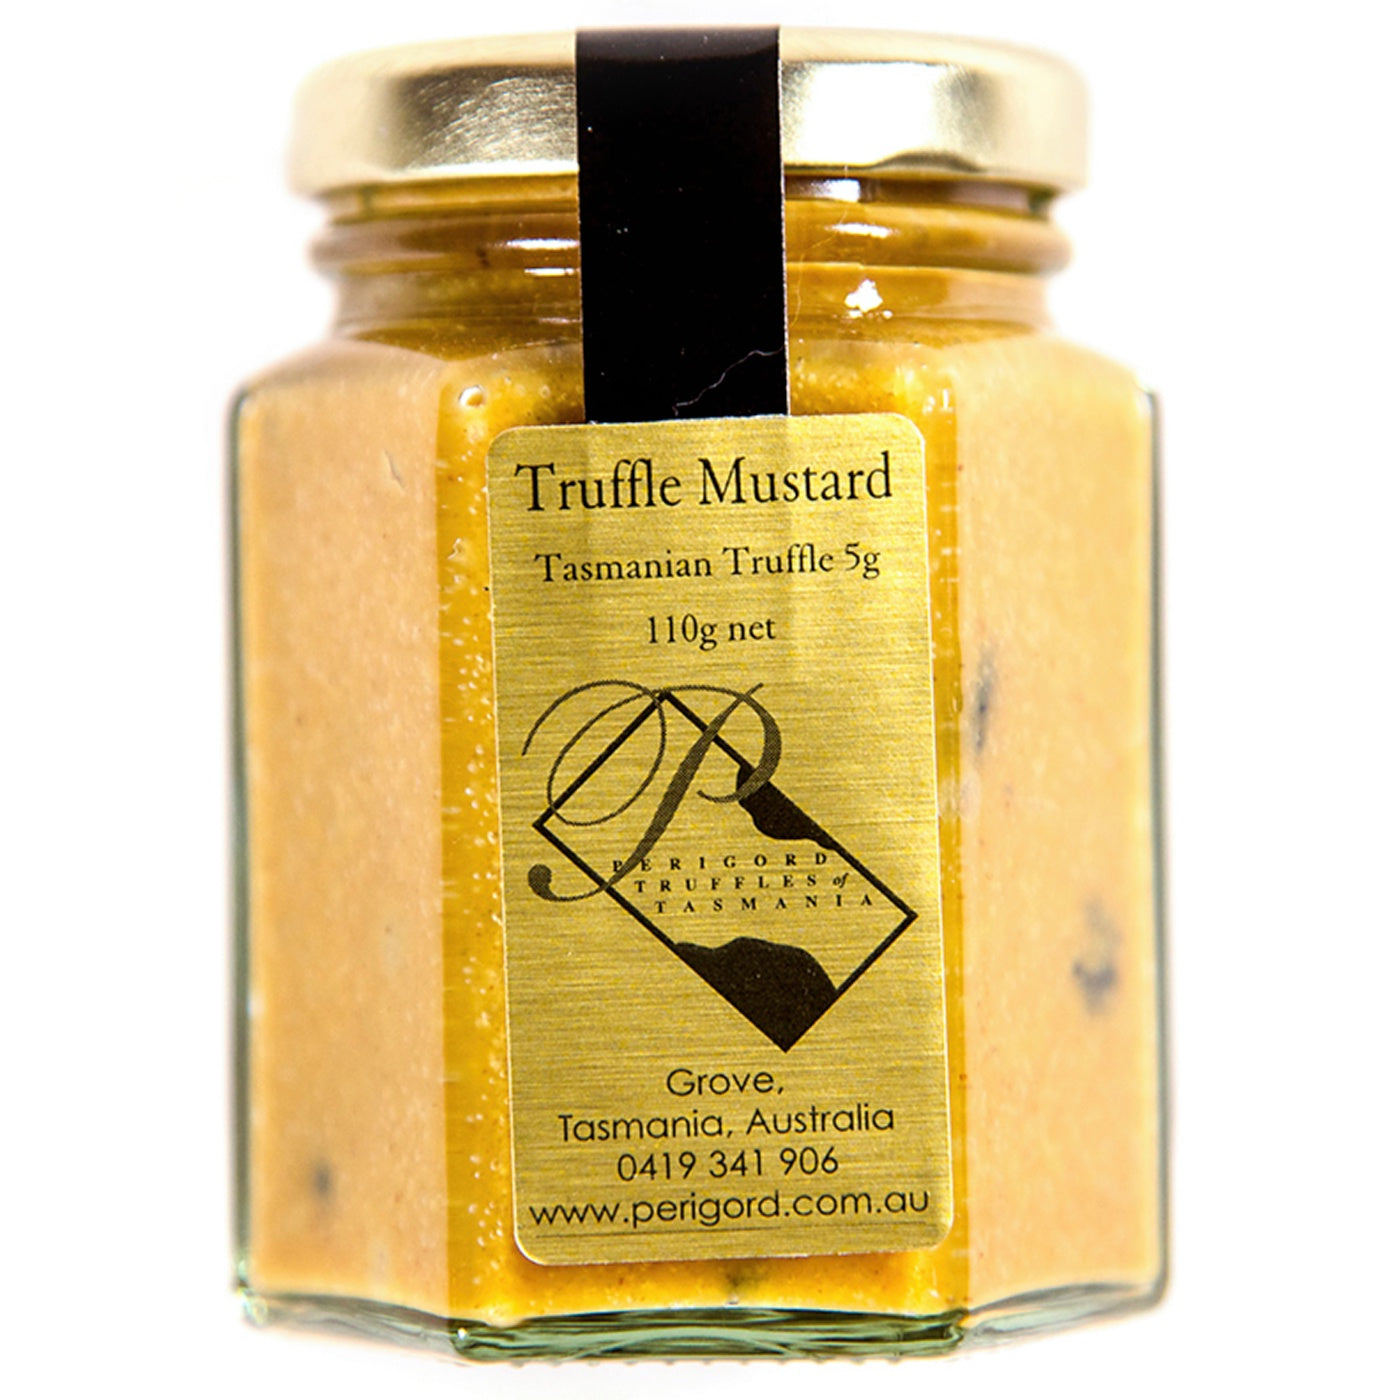 Perigord Truffles of Tasmania - Truffle Mustard - 110g